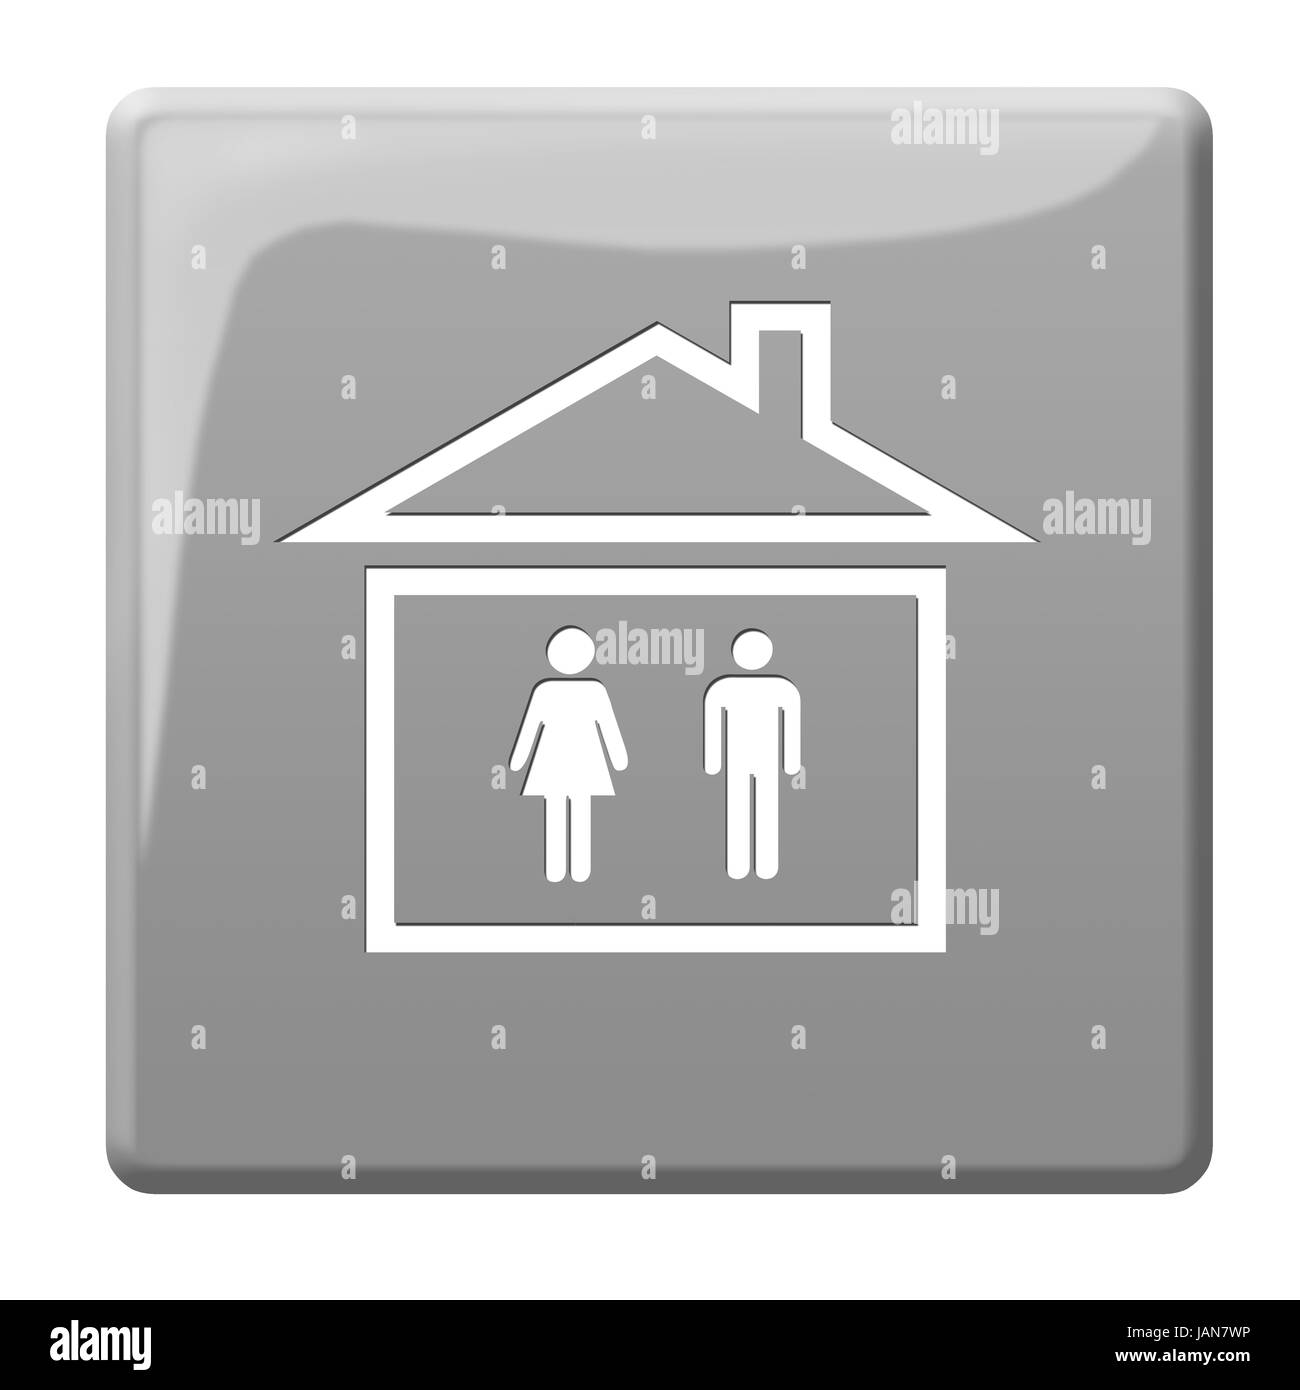 outhouse symbol button Stock Photo